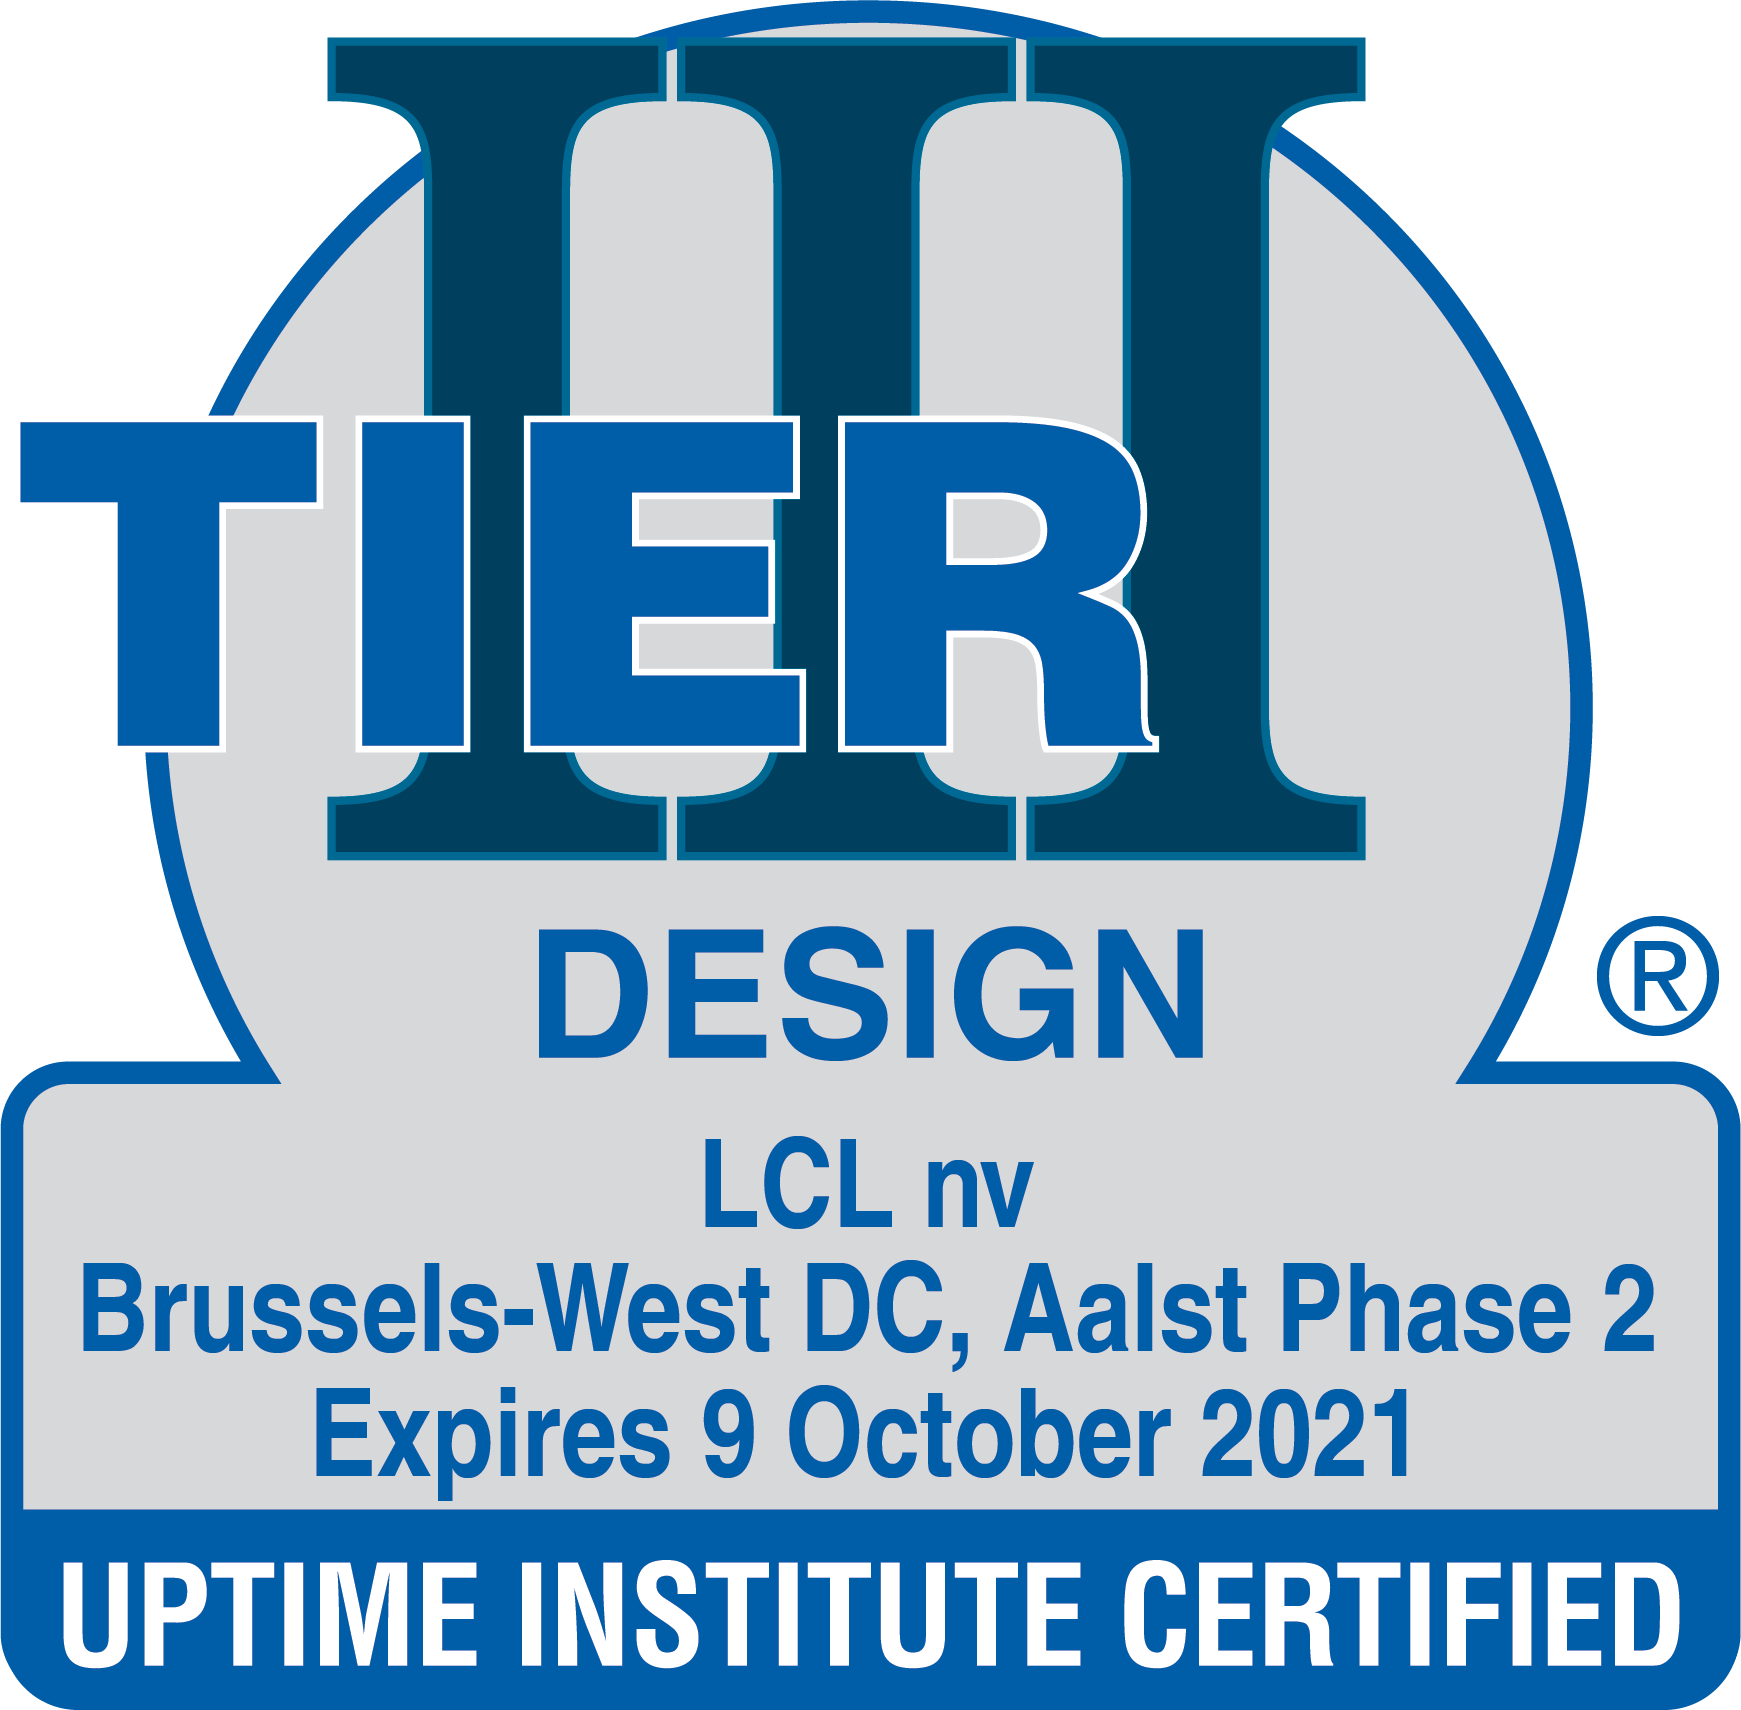 TIER III centre de données - Design Uptime Institute Certified